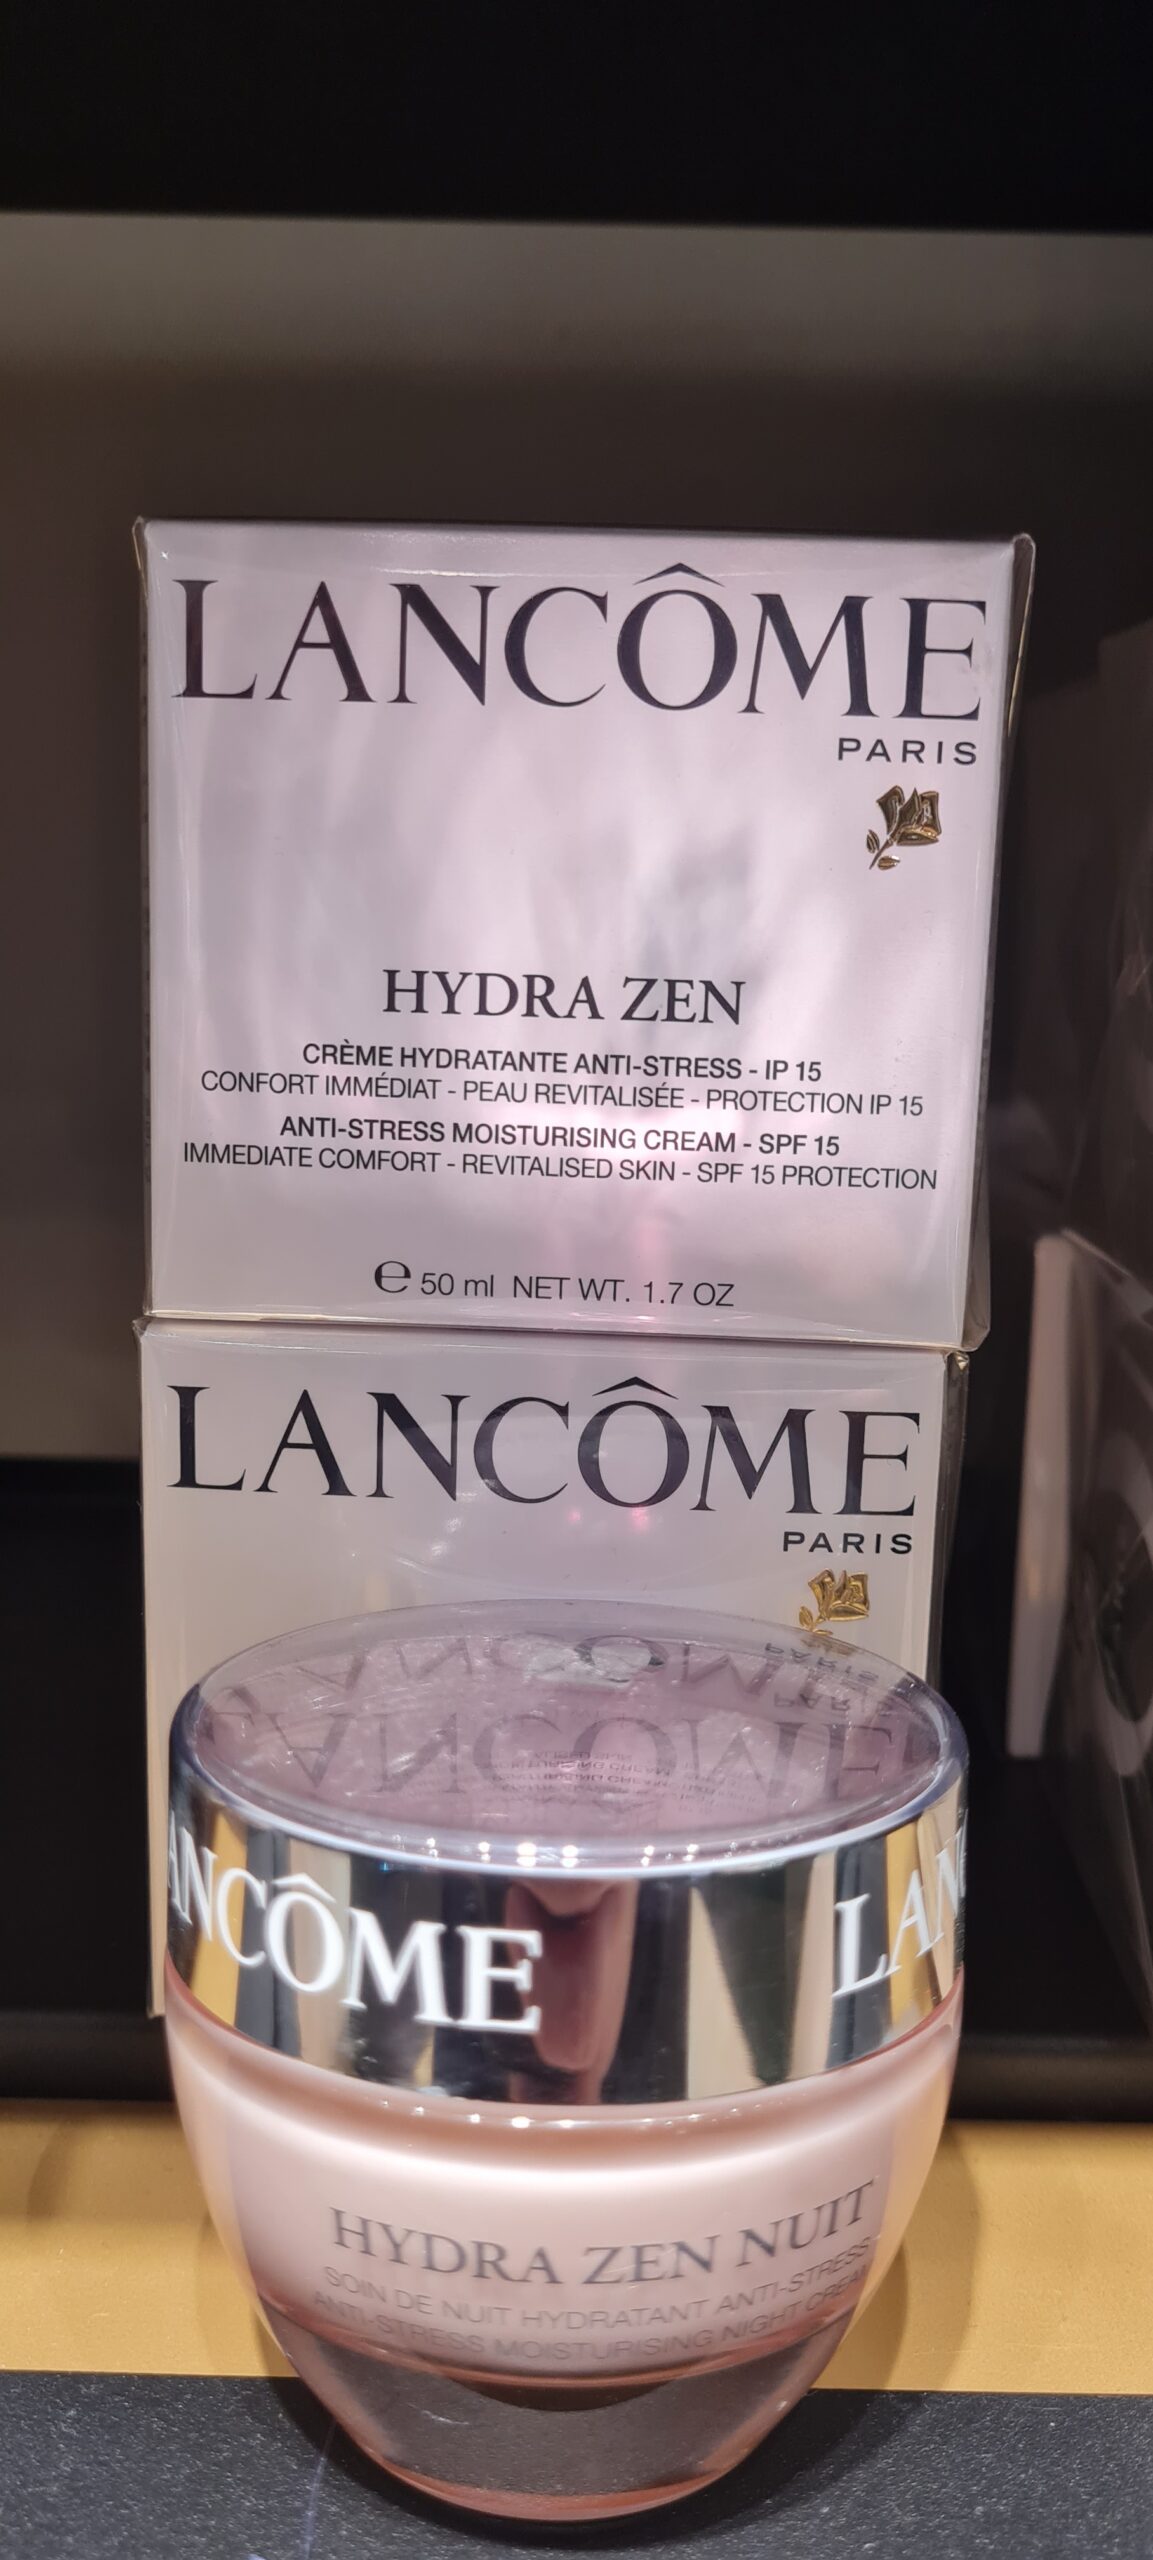 Lancome hydra zen créme hydratante anti stress hudcreme